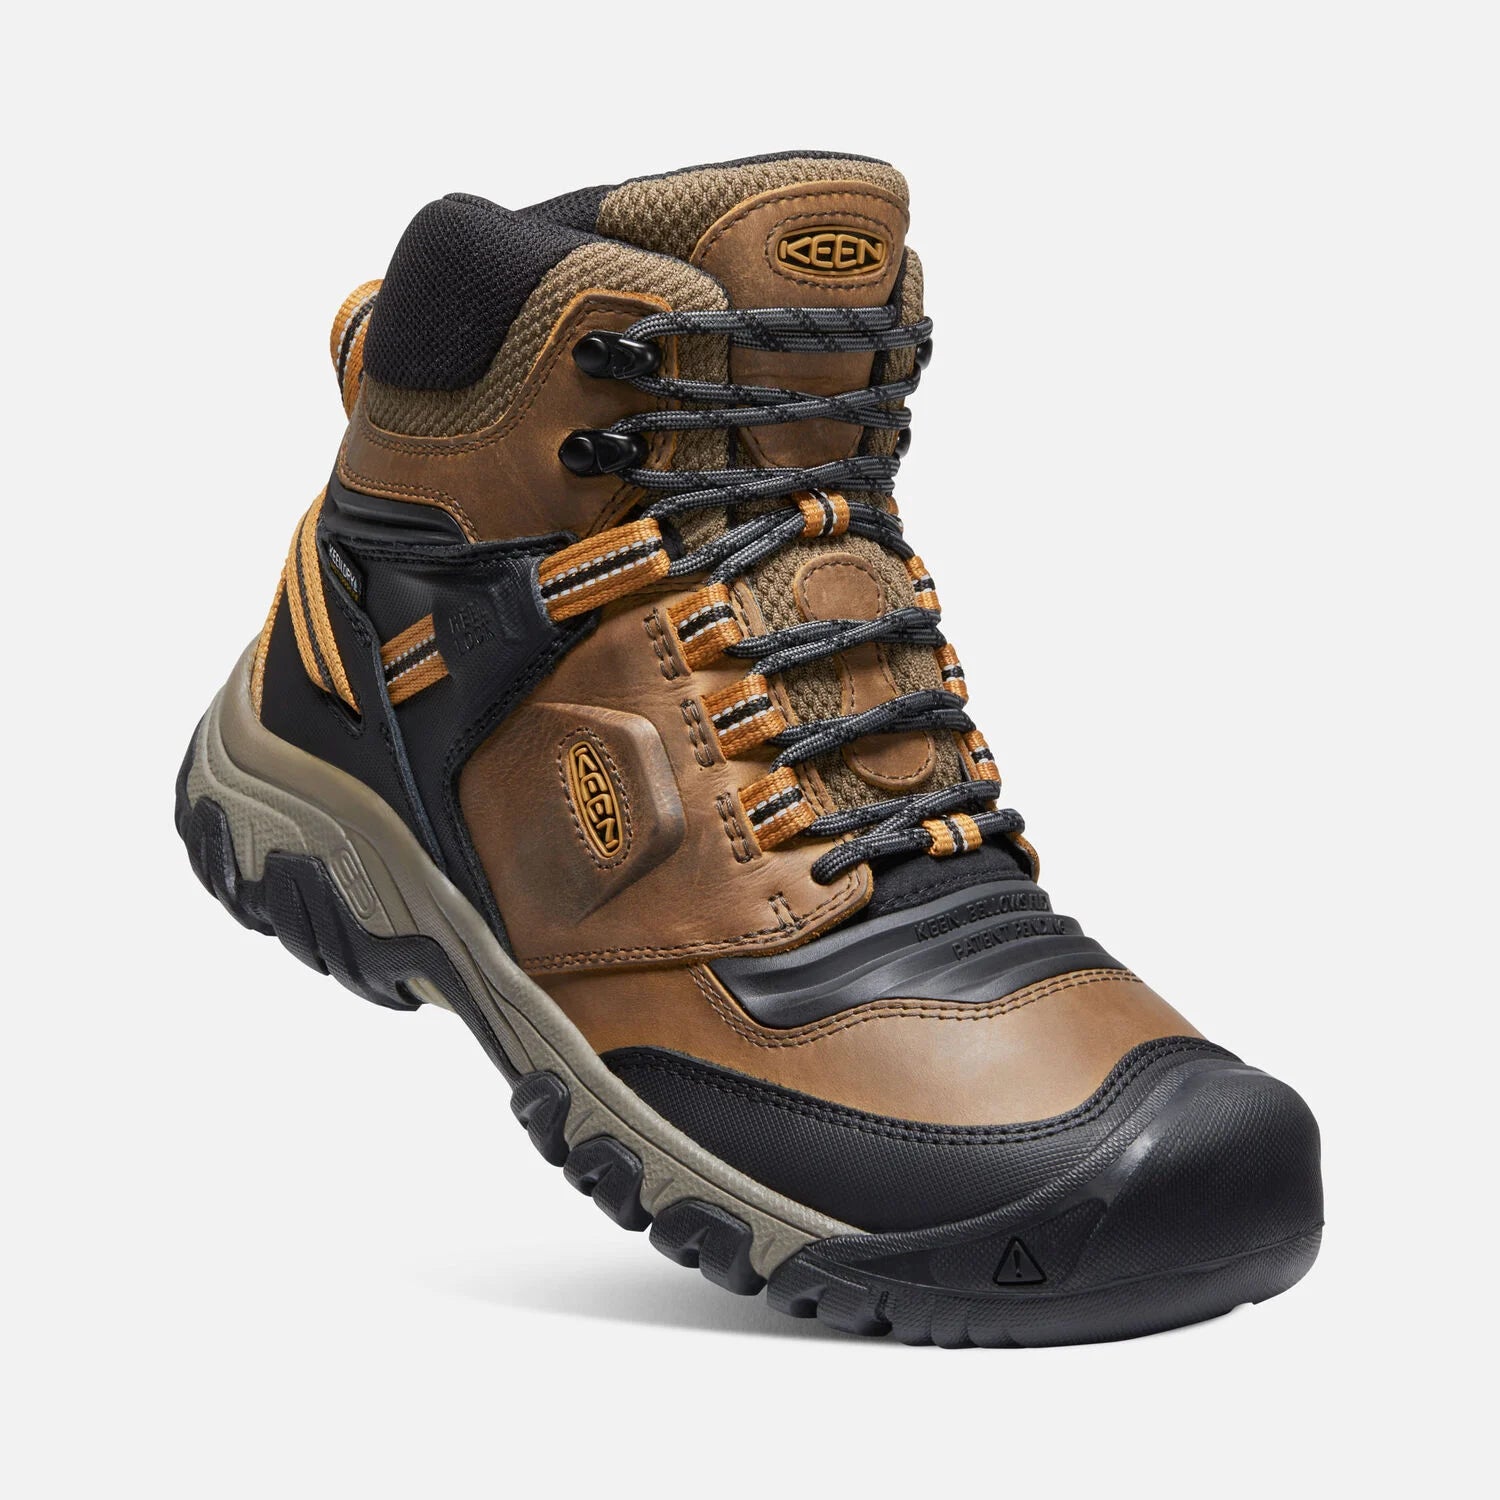 Men's Keen Ridge Flex Waterproof Boot Color: Bison/ Golden Brown